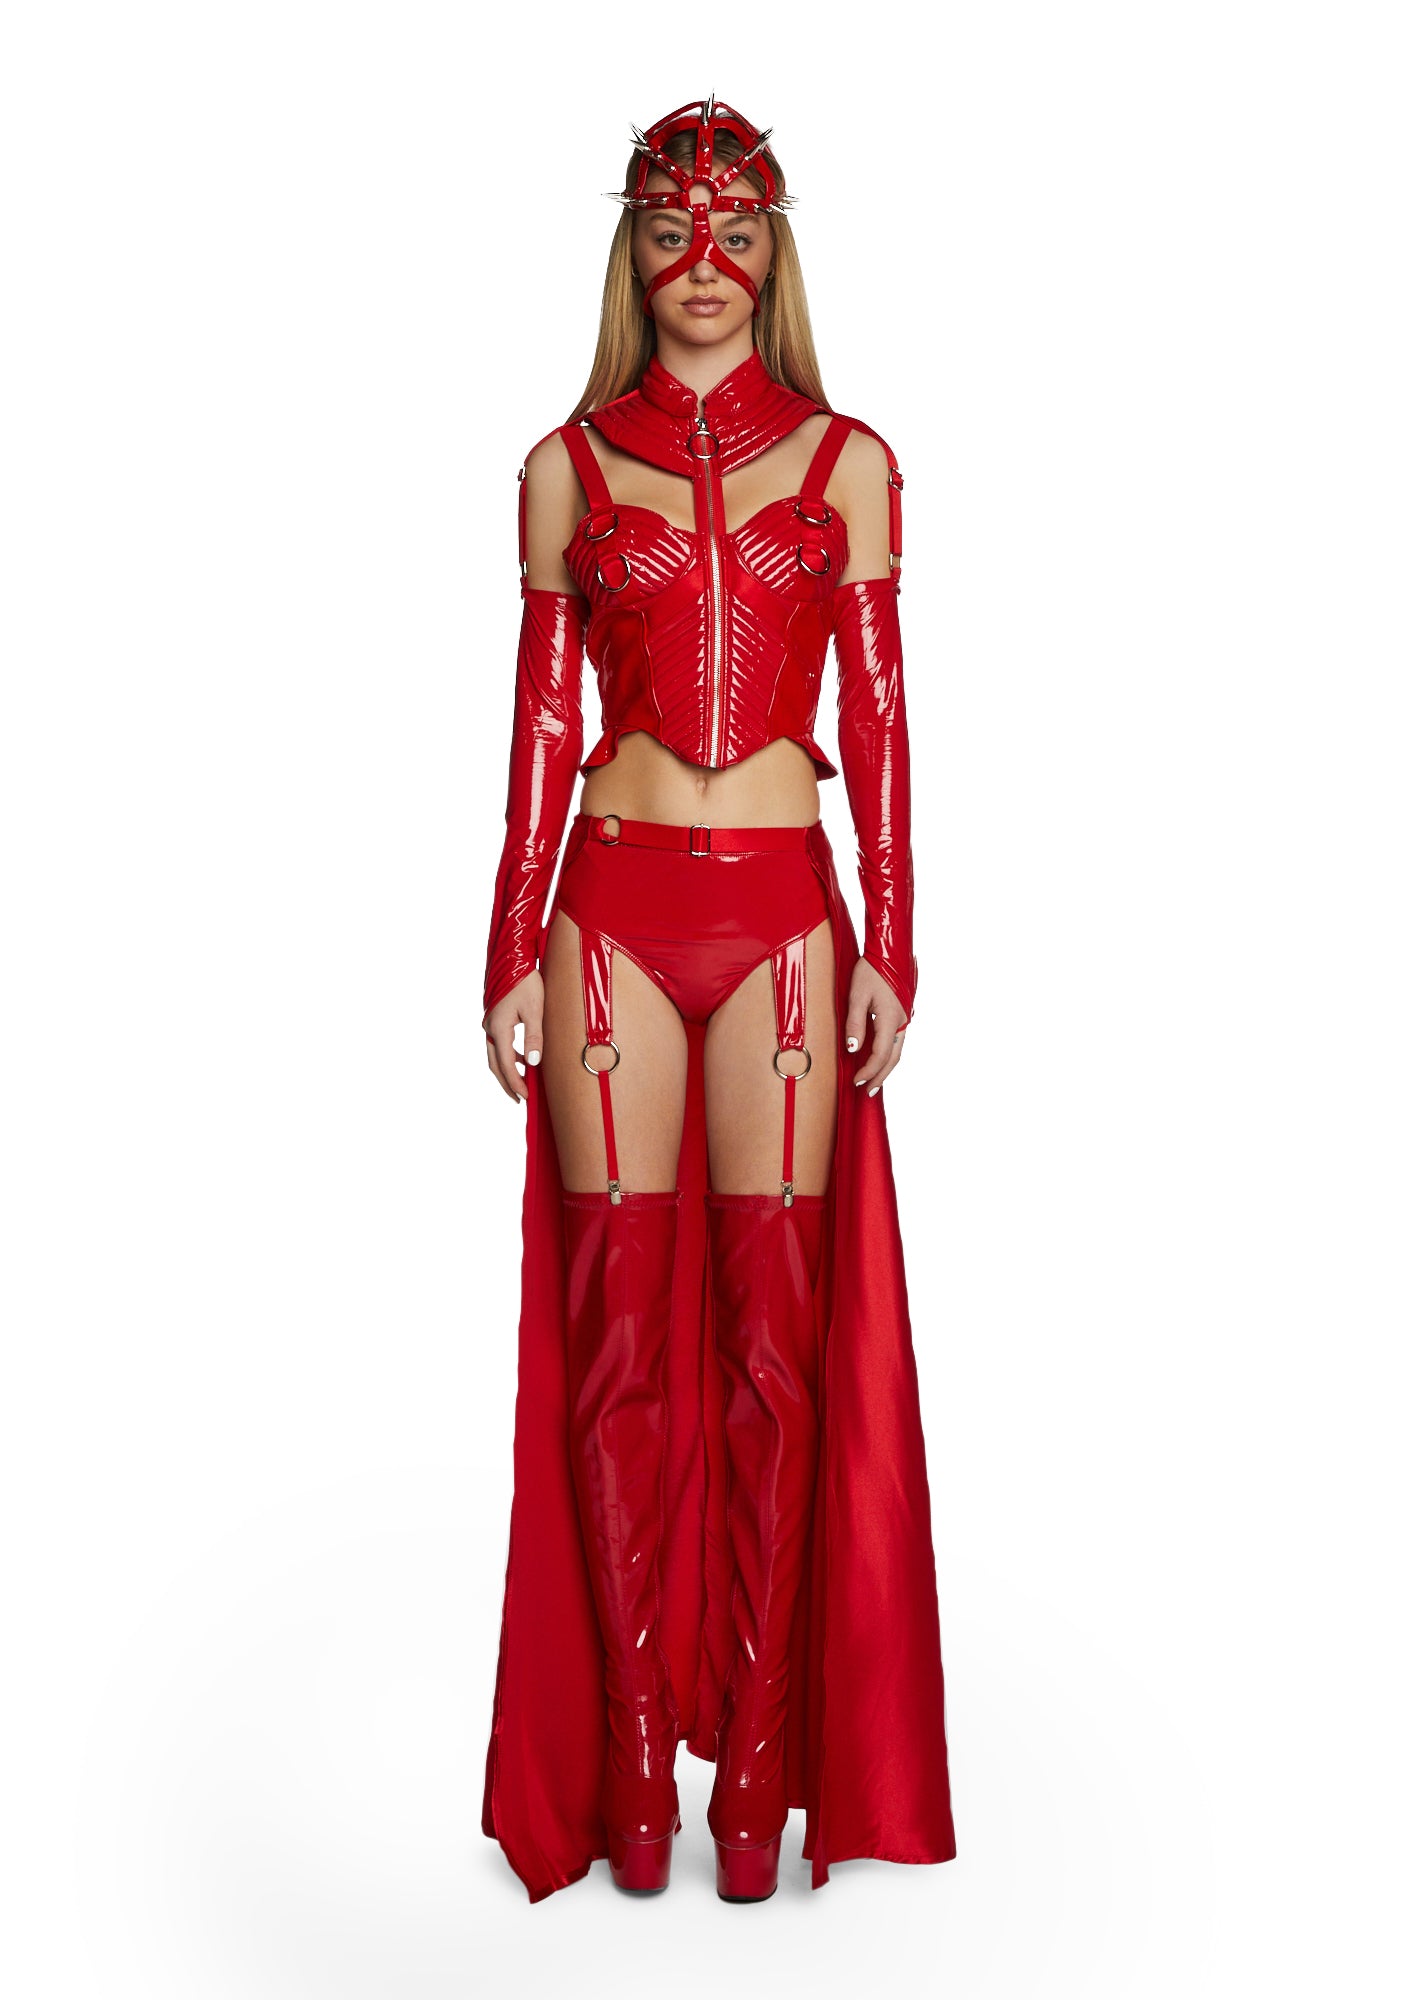 Female Hellraiser Costume Padded Vinyl S&M Costume - Red – Dolls Kill